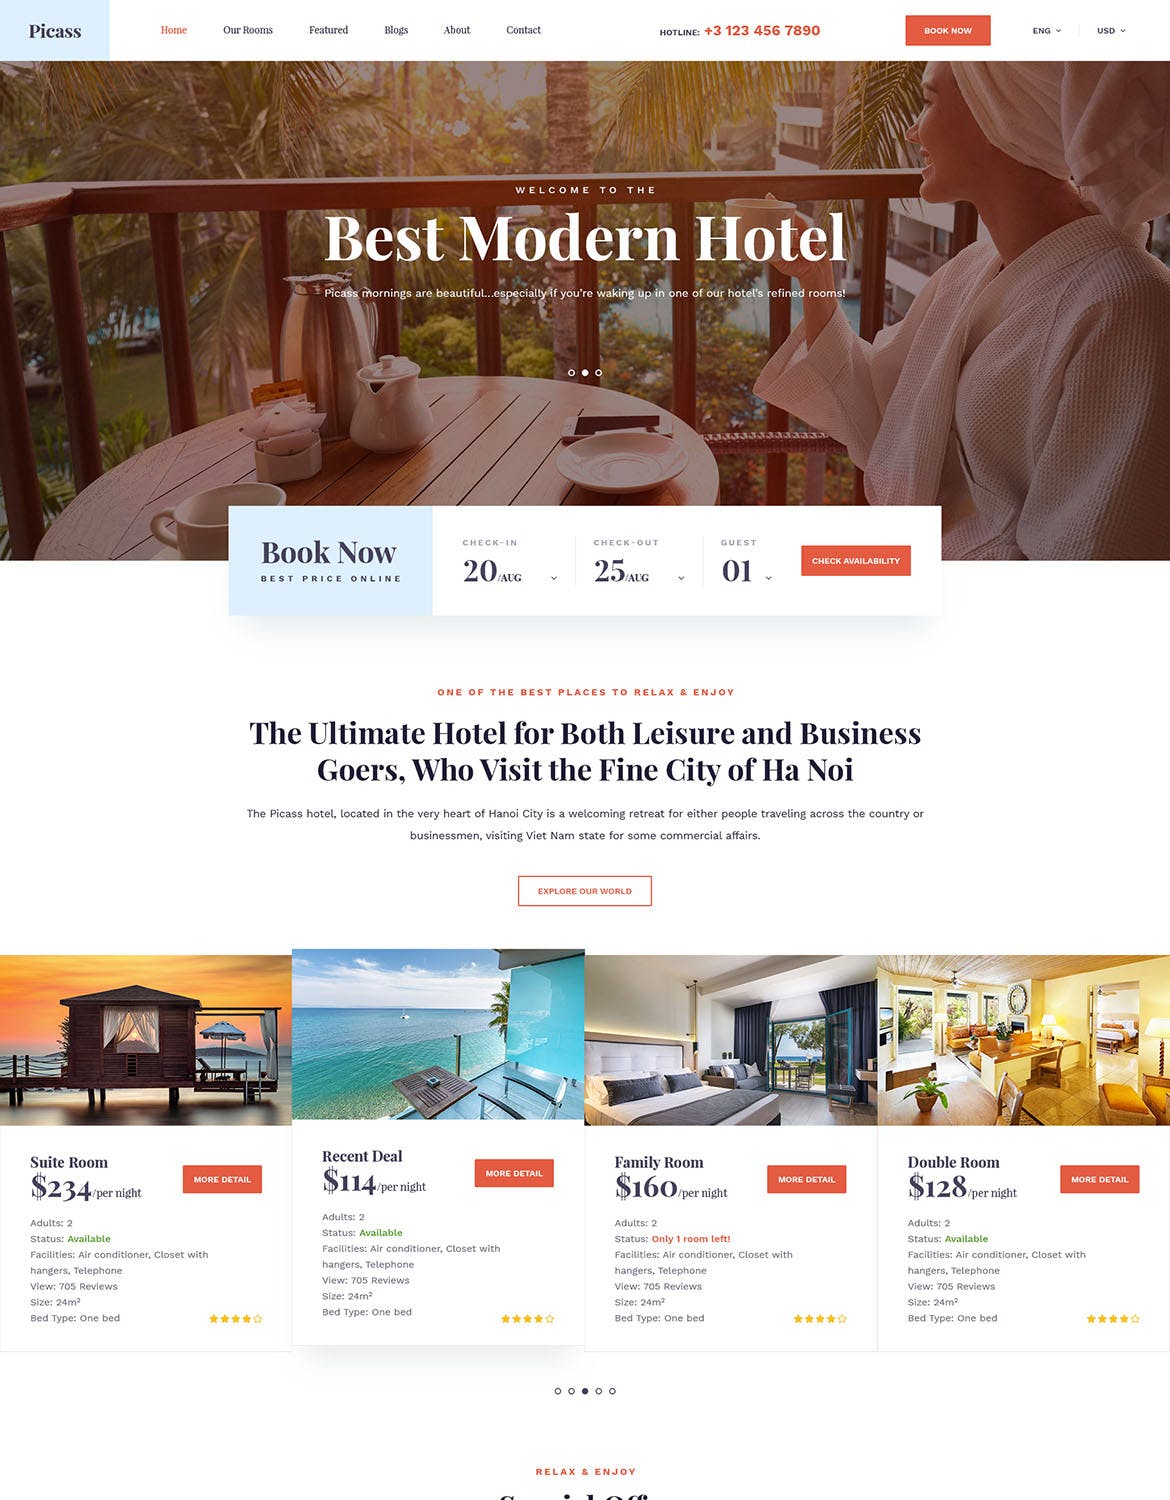 酒店预订网站设计PSD模板 Picass | Hotel PSD Templates插图(1)